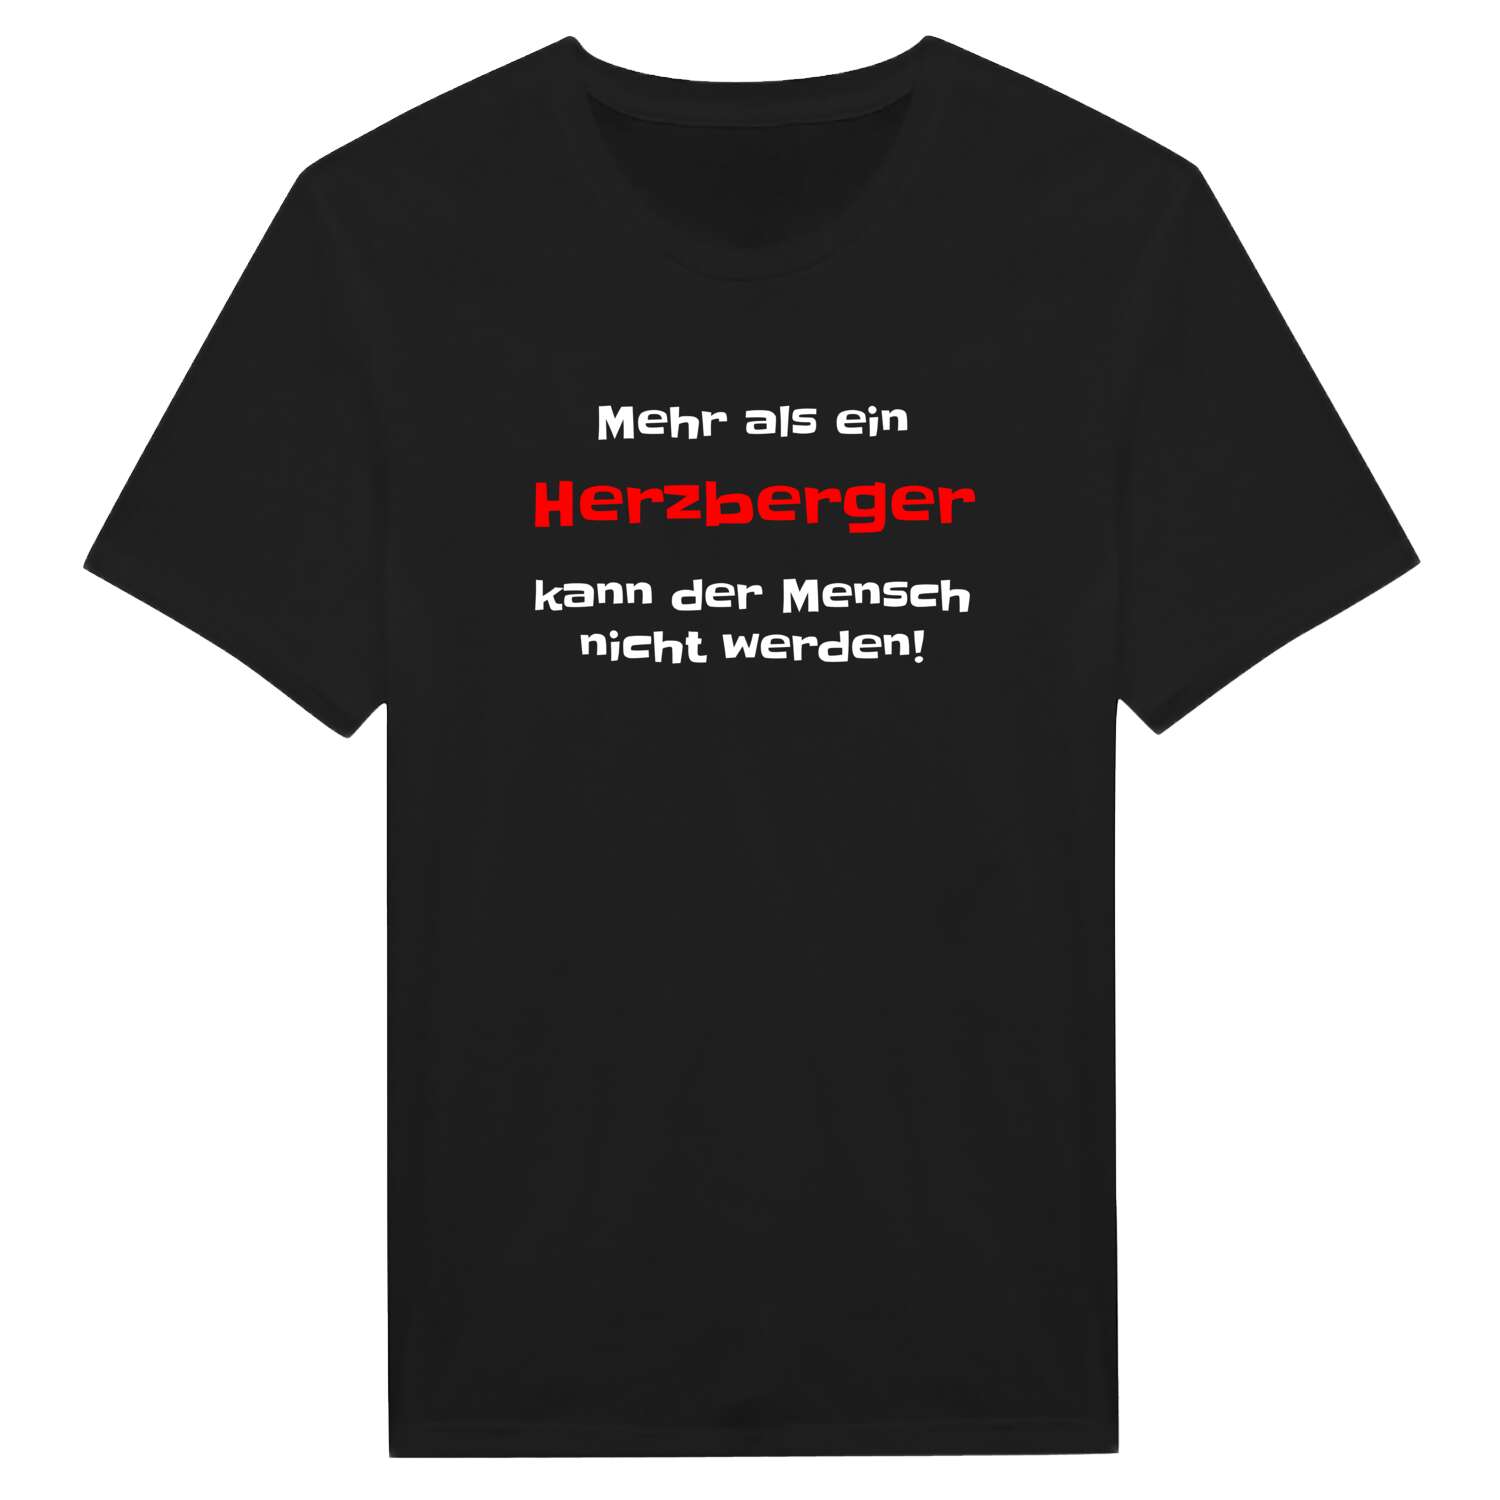 Herzberg T-Shirt »Mehr als ein«